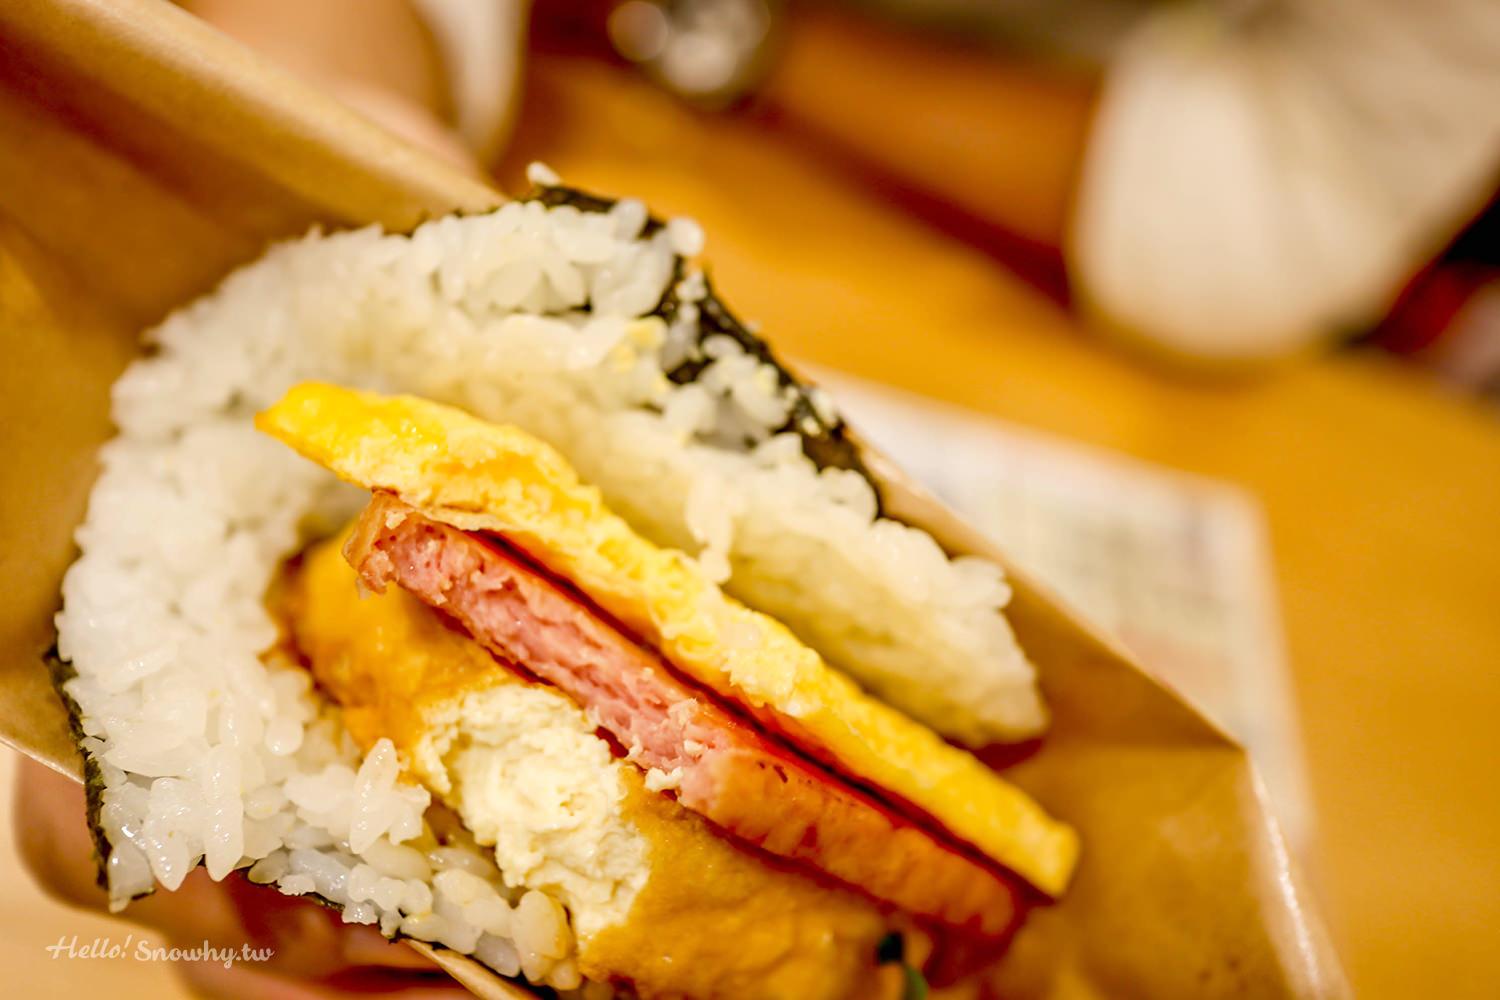 沖繩必吃美食,人氣豬肉蛋飯糰,豬肉蛋飯糰,那霸機場分店,沖繩必吃飯糰,排隊美食